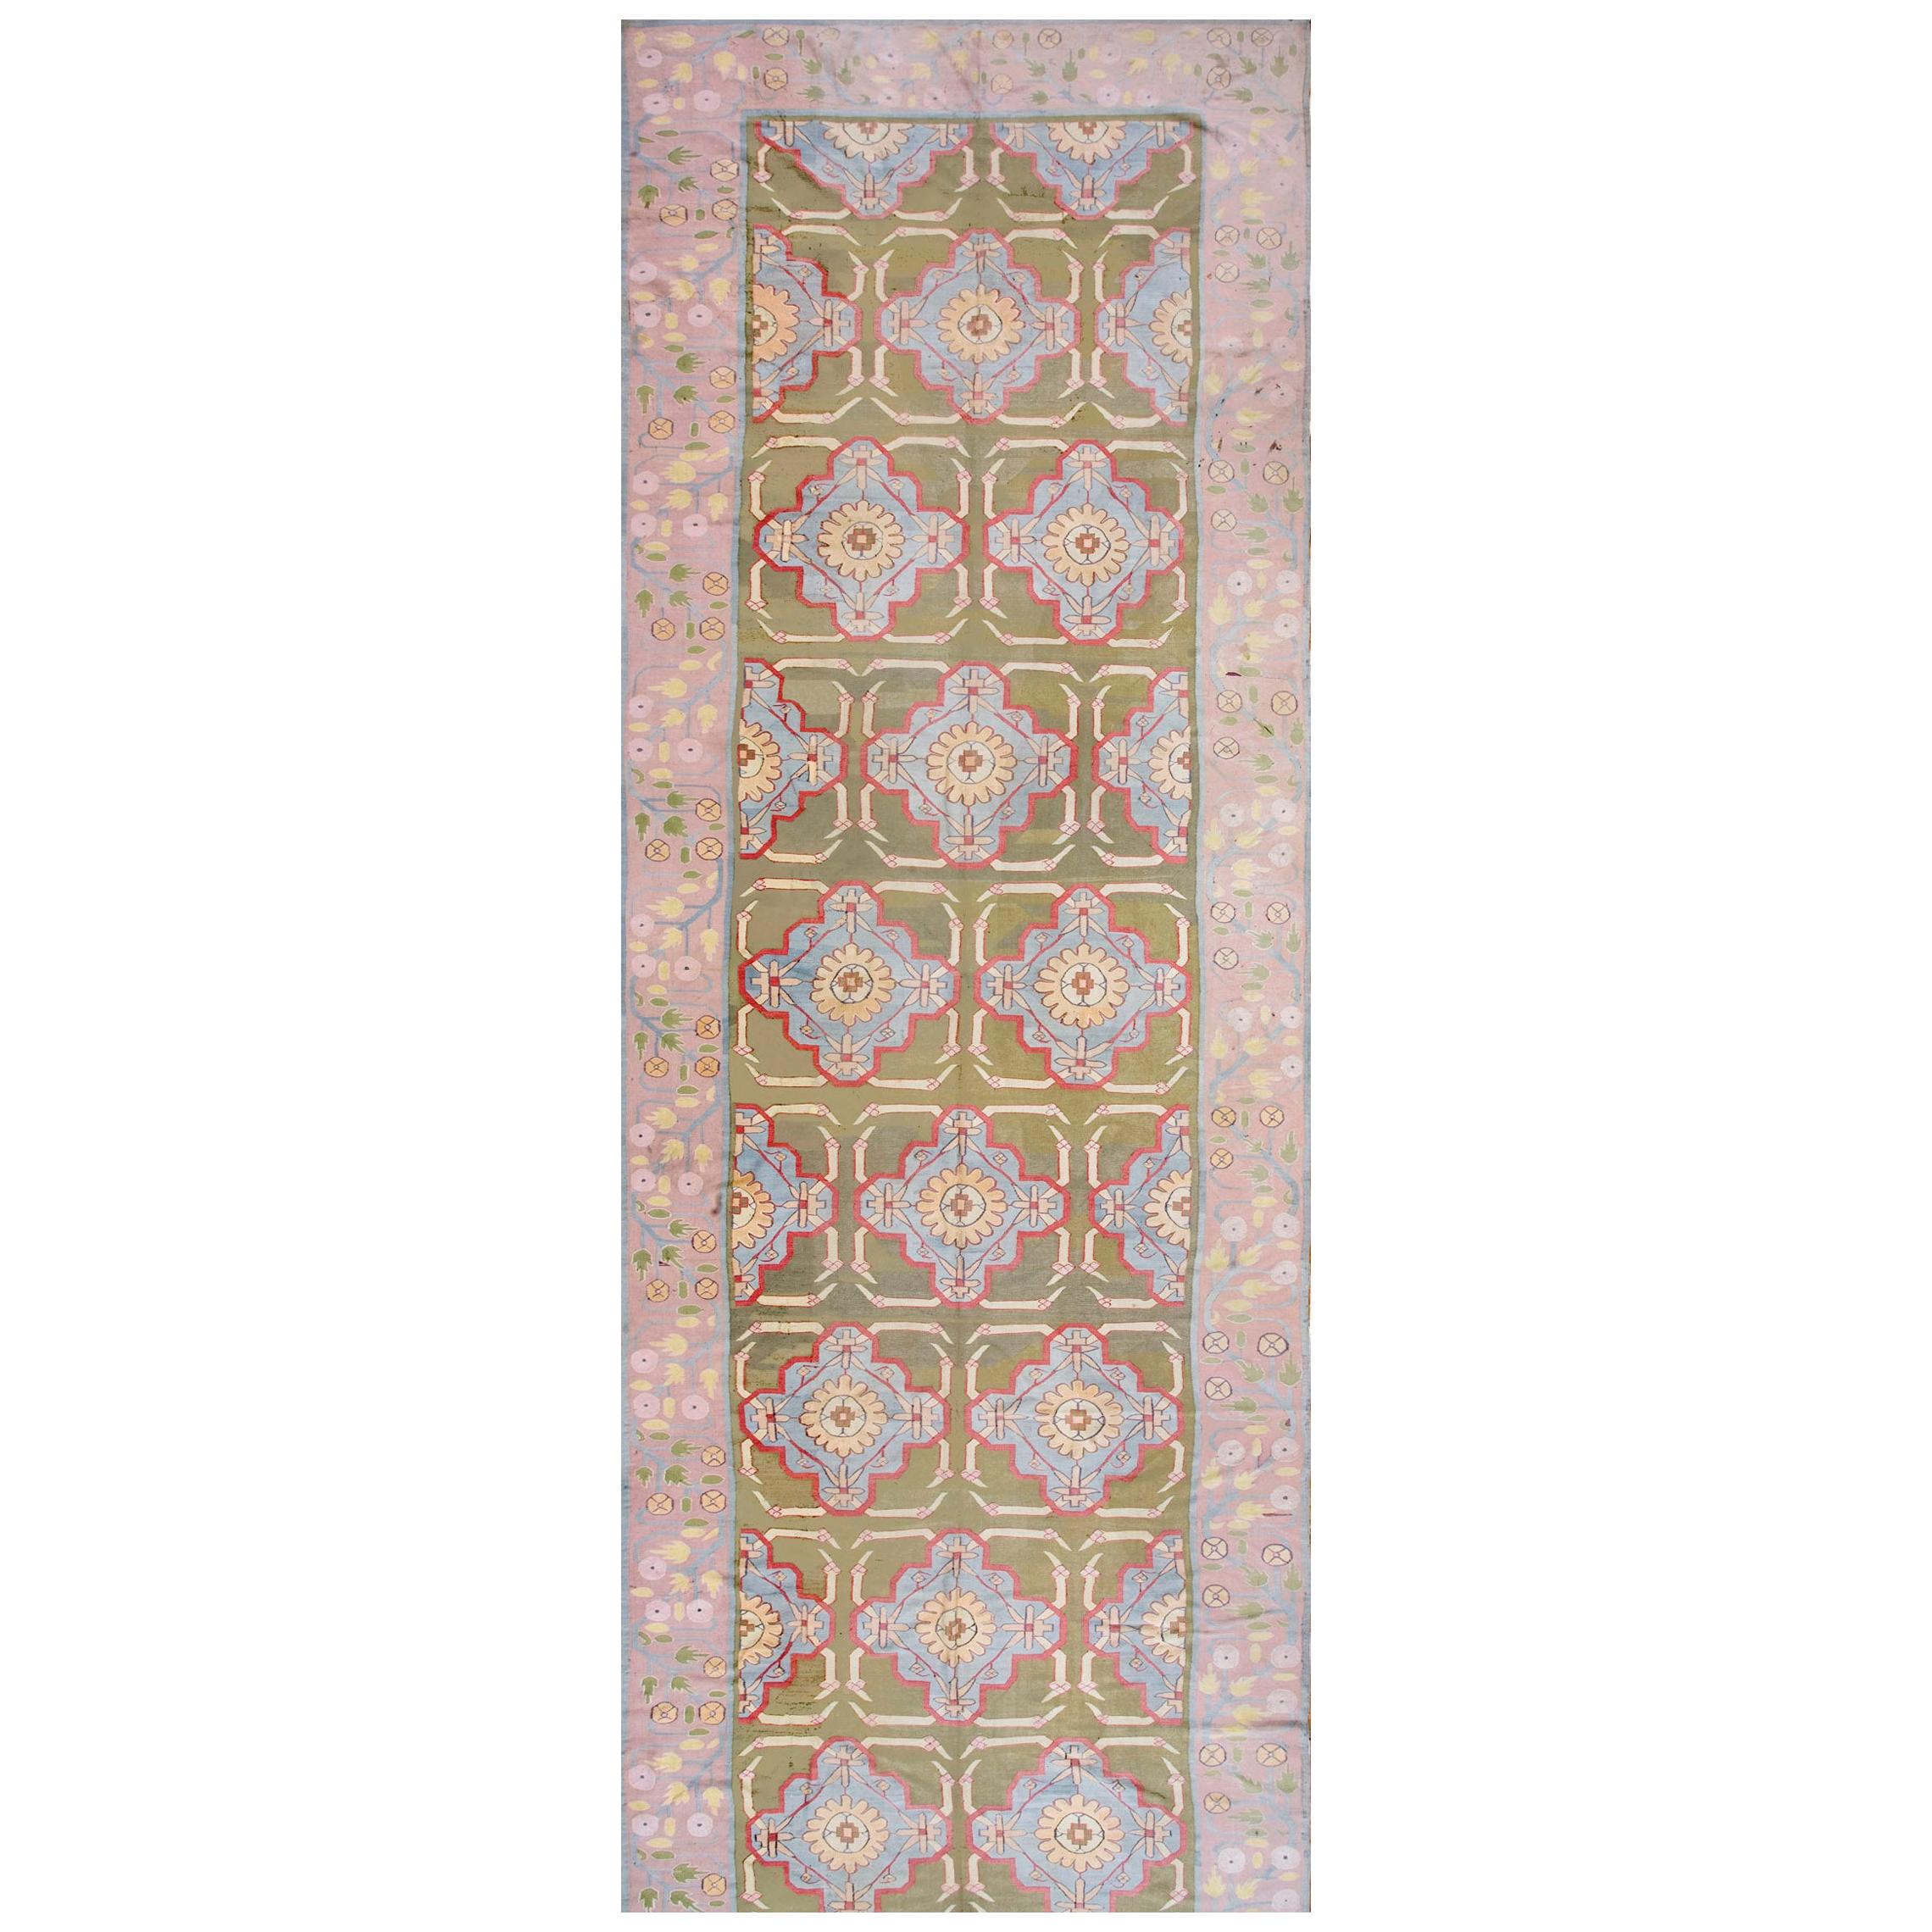 Indischer Dhurrie-Teppich aus Baumwolle des frühen 20. Jahrhunderts ( 6'8" x 28'2" - 203 x 860")